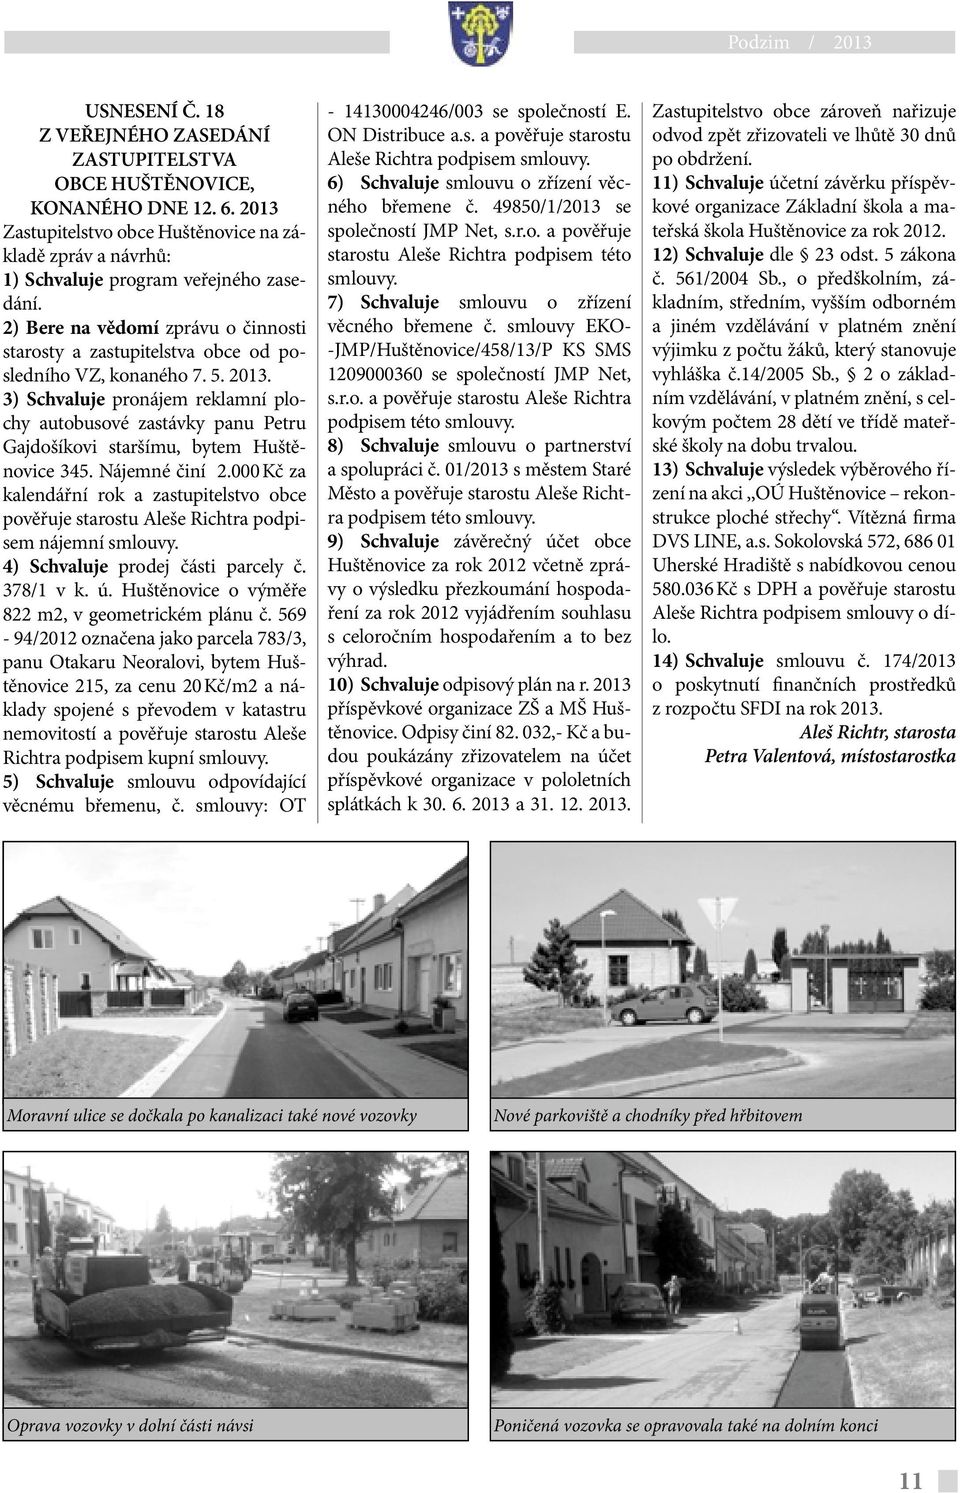 2) Bere na vědomí zprávu o činnosti starosty a zastupitelstva obce od posledního VZ, konaného 7. 5. 2013.